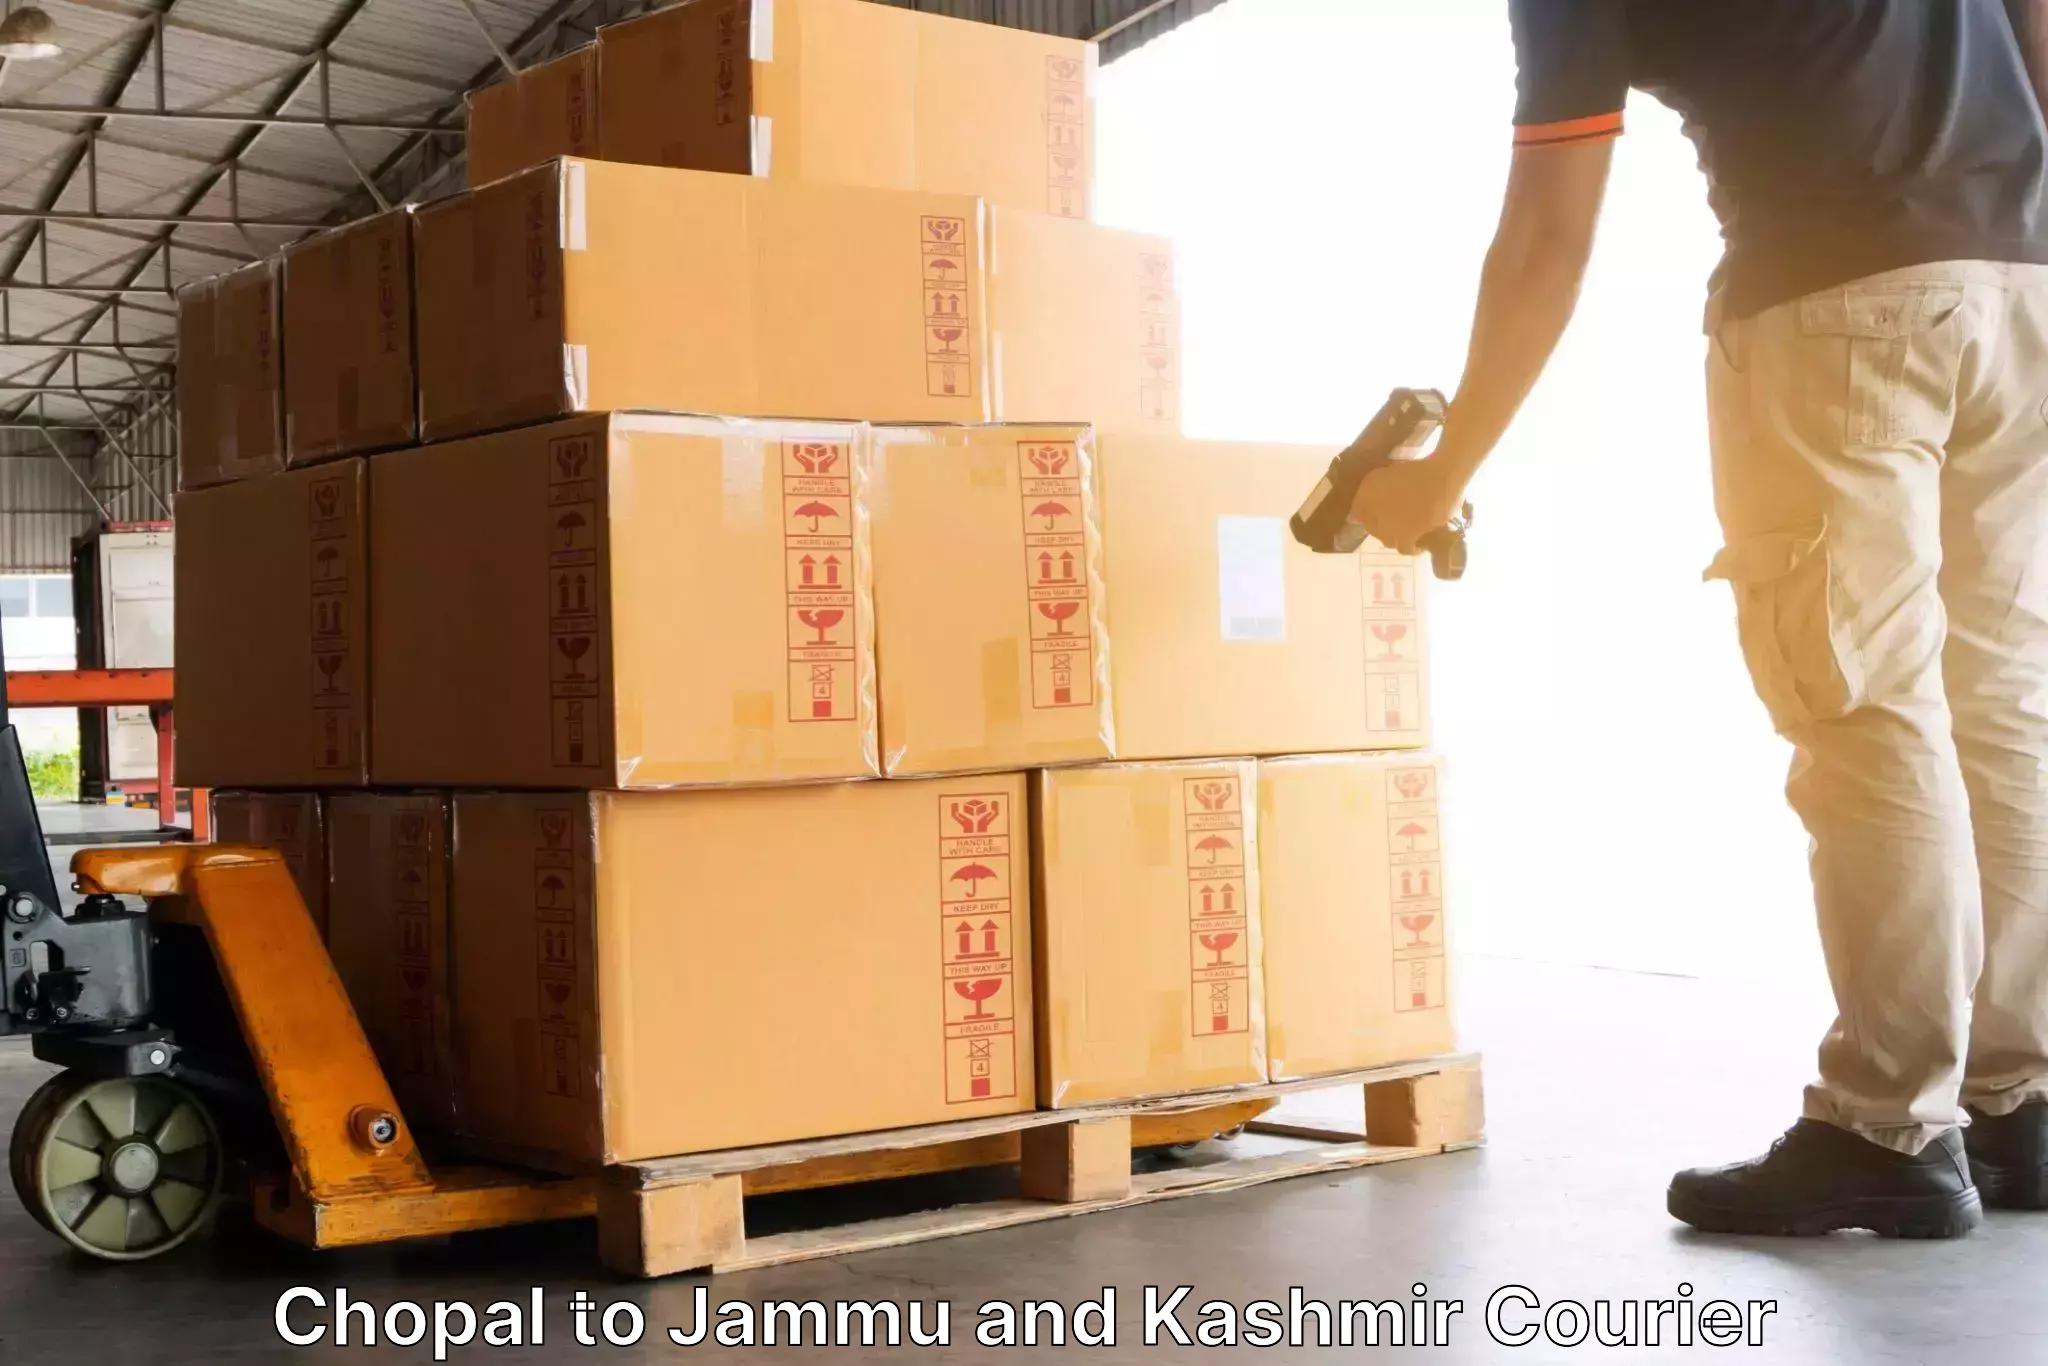 Holiday shipping services Chopal to Baramulla